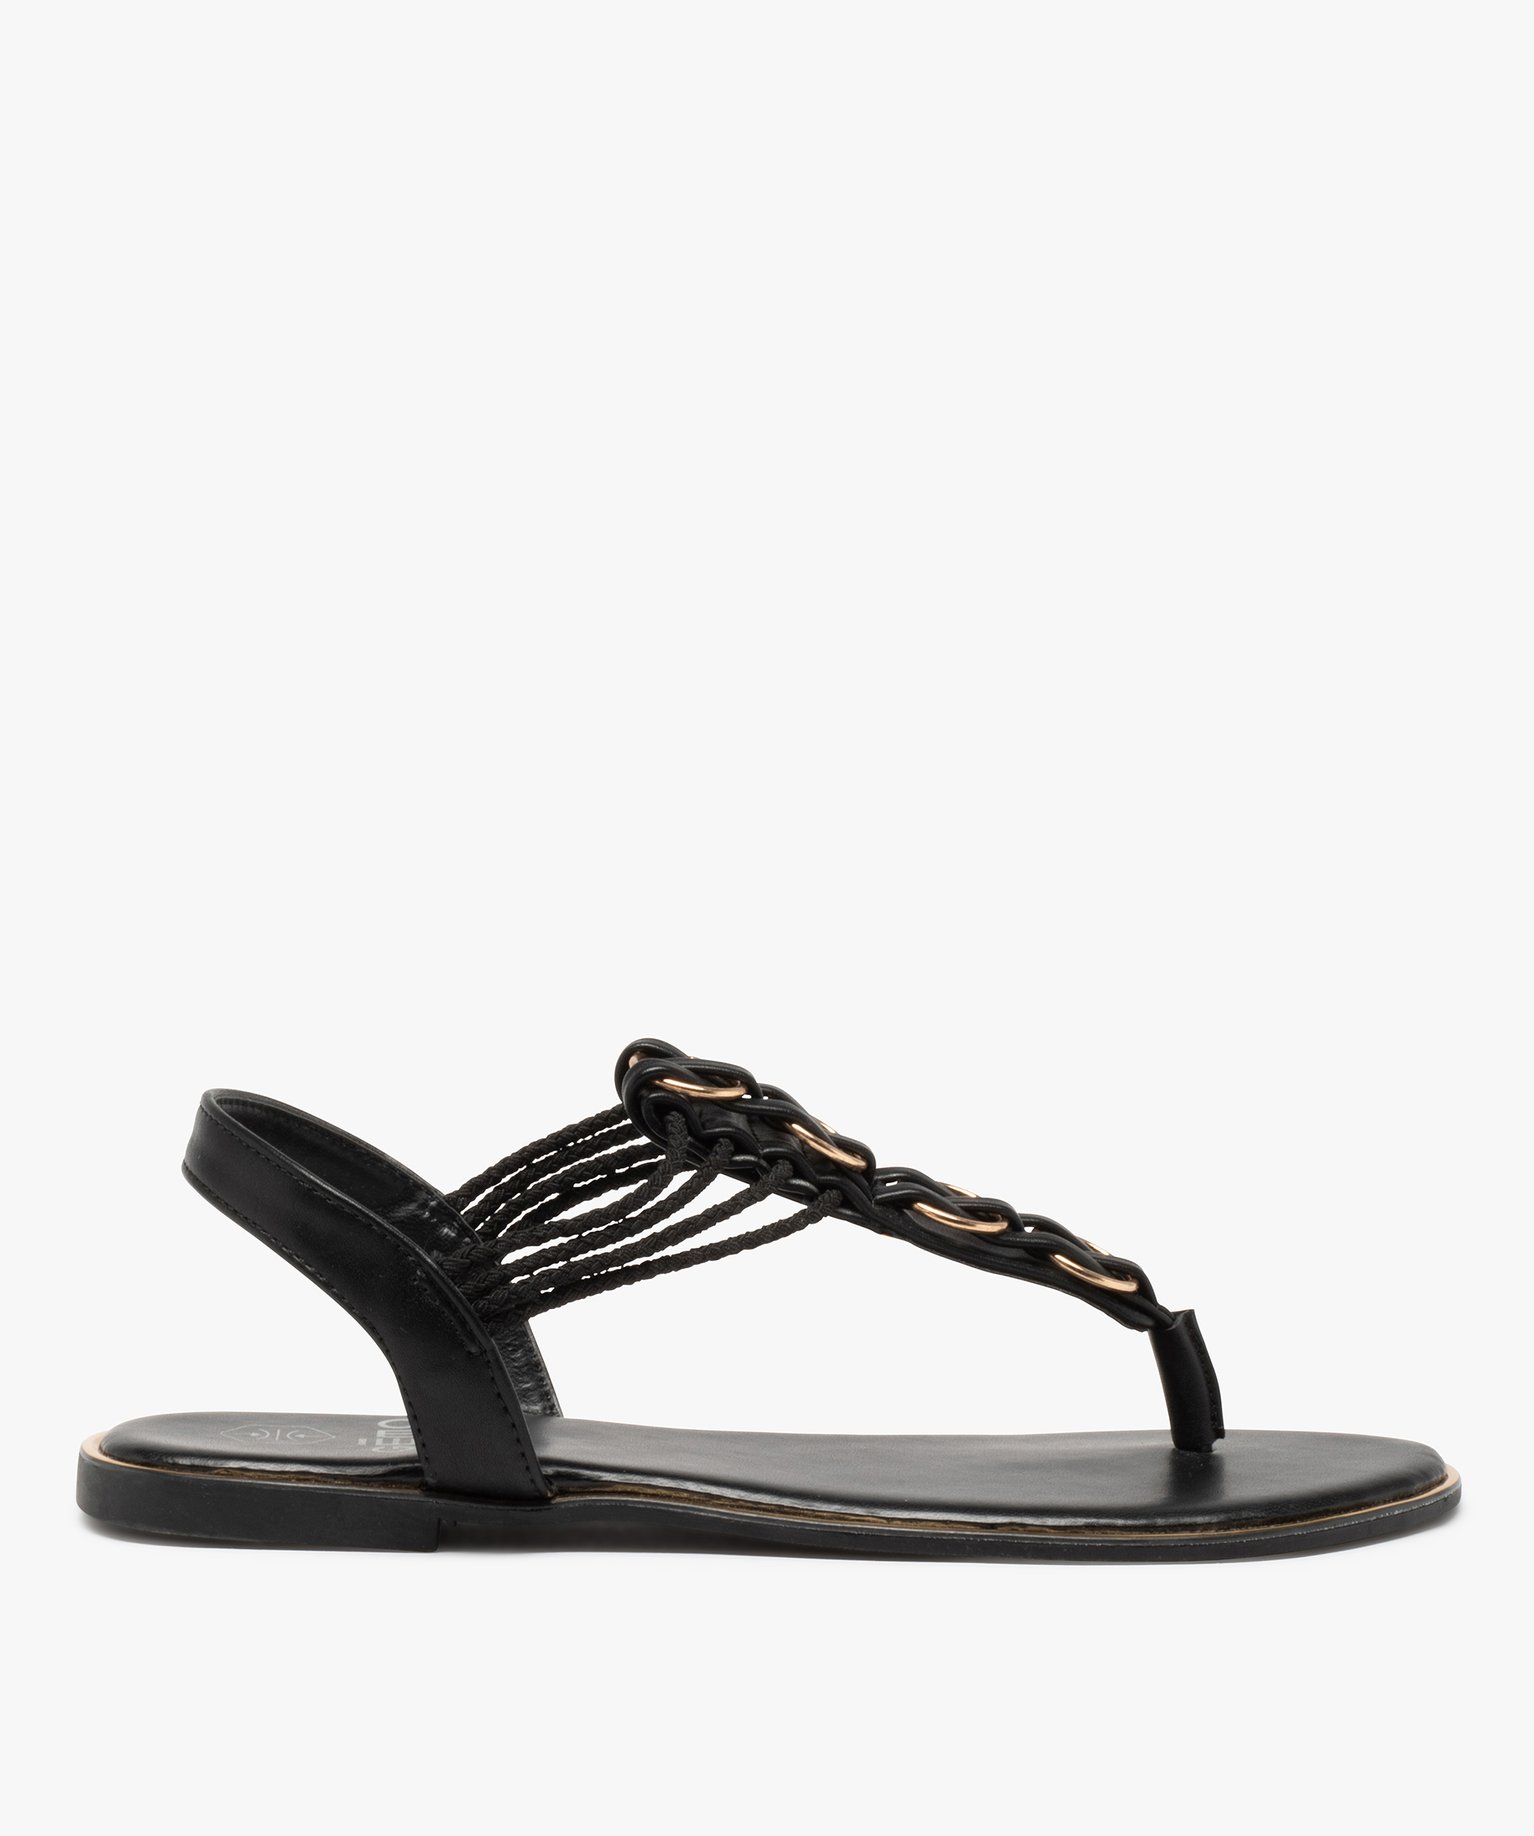 sandales femme a talon plat et entre-doigts details metal noir sandales plates et nu-pieds